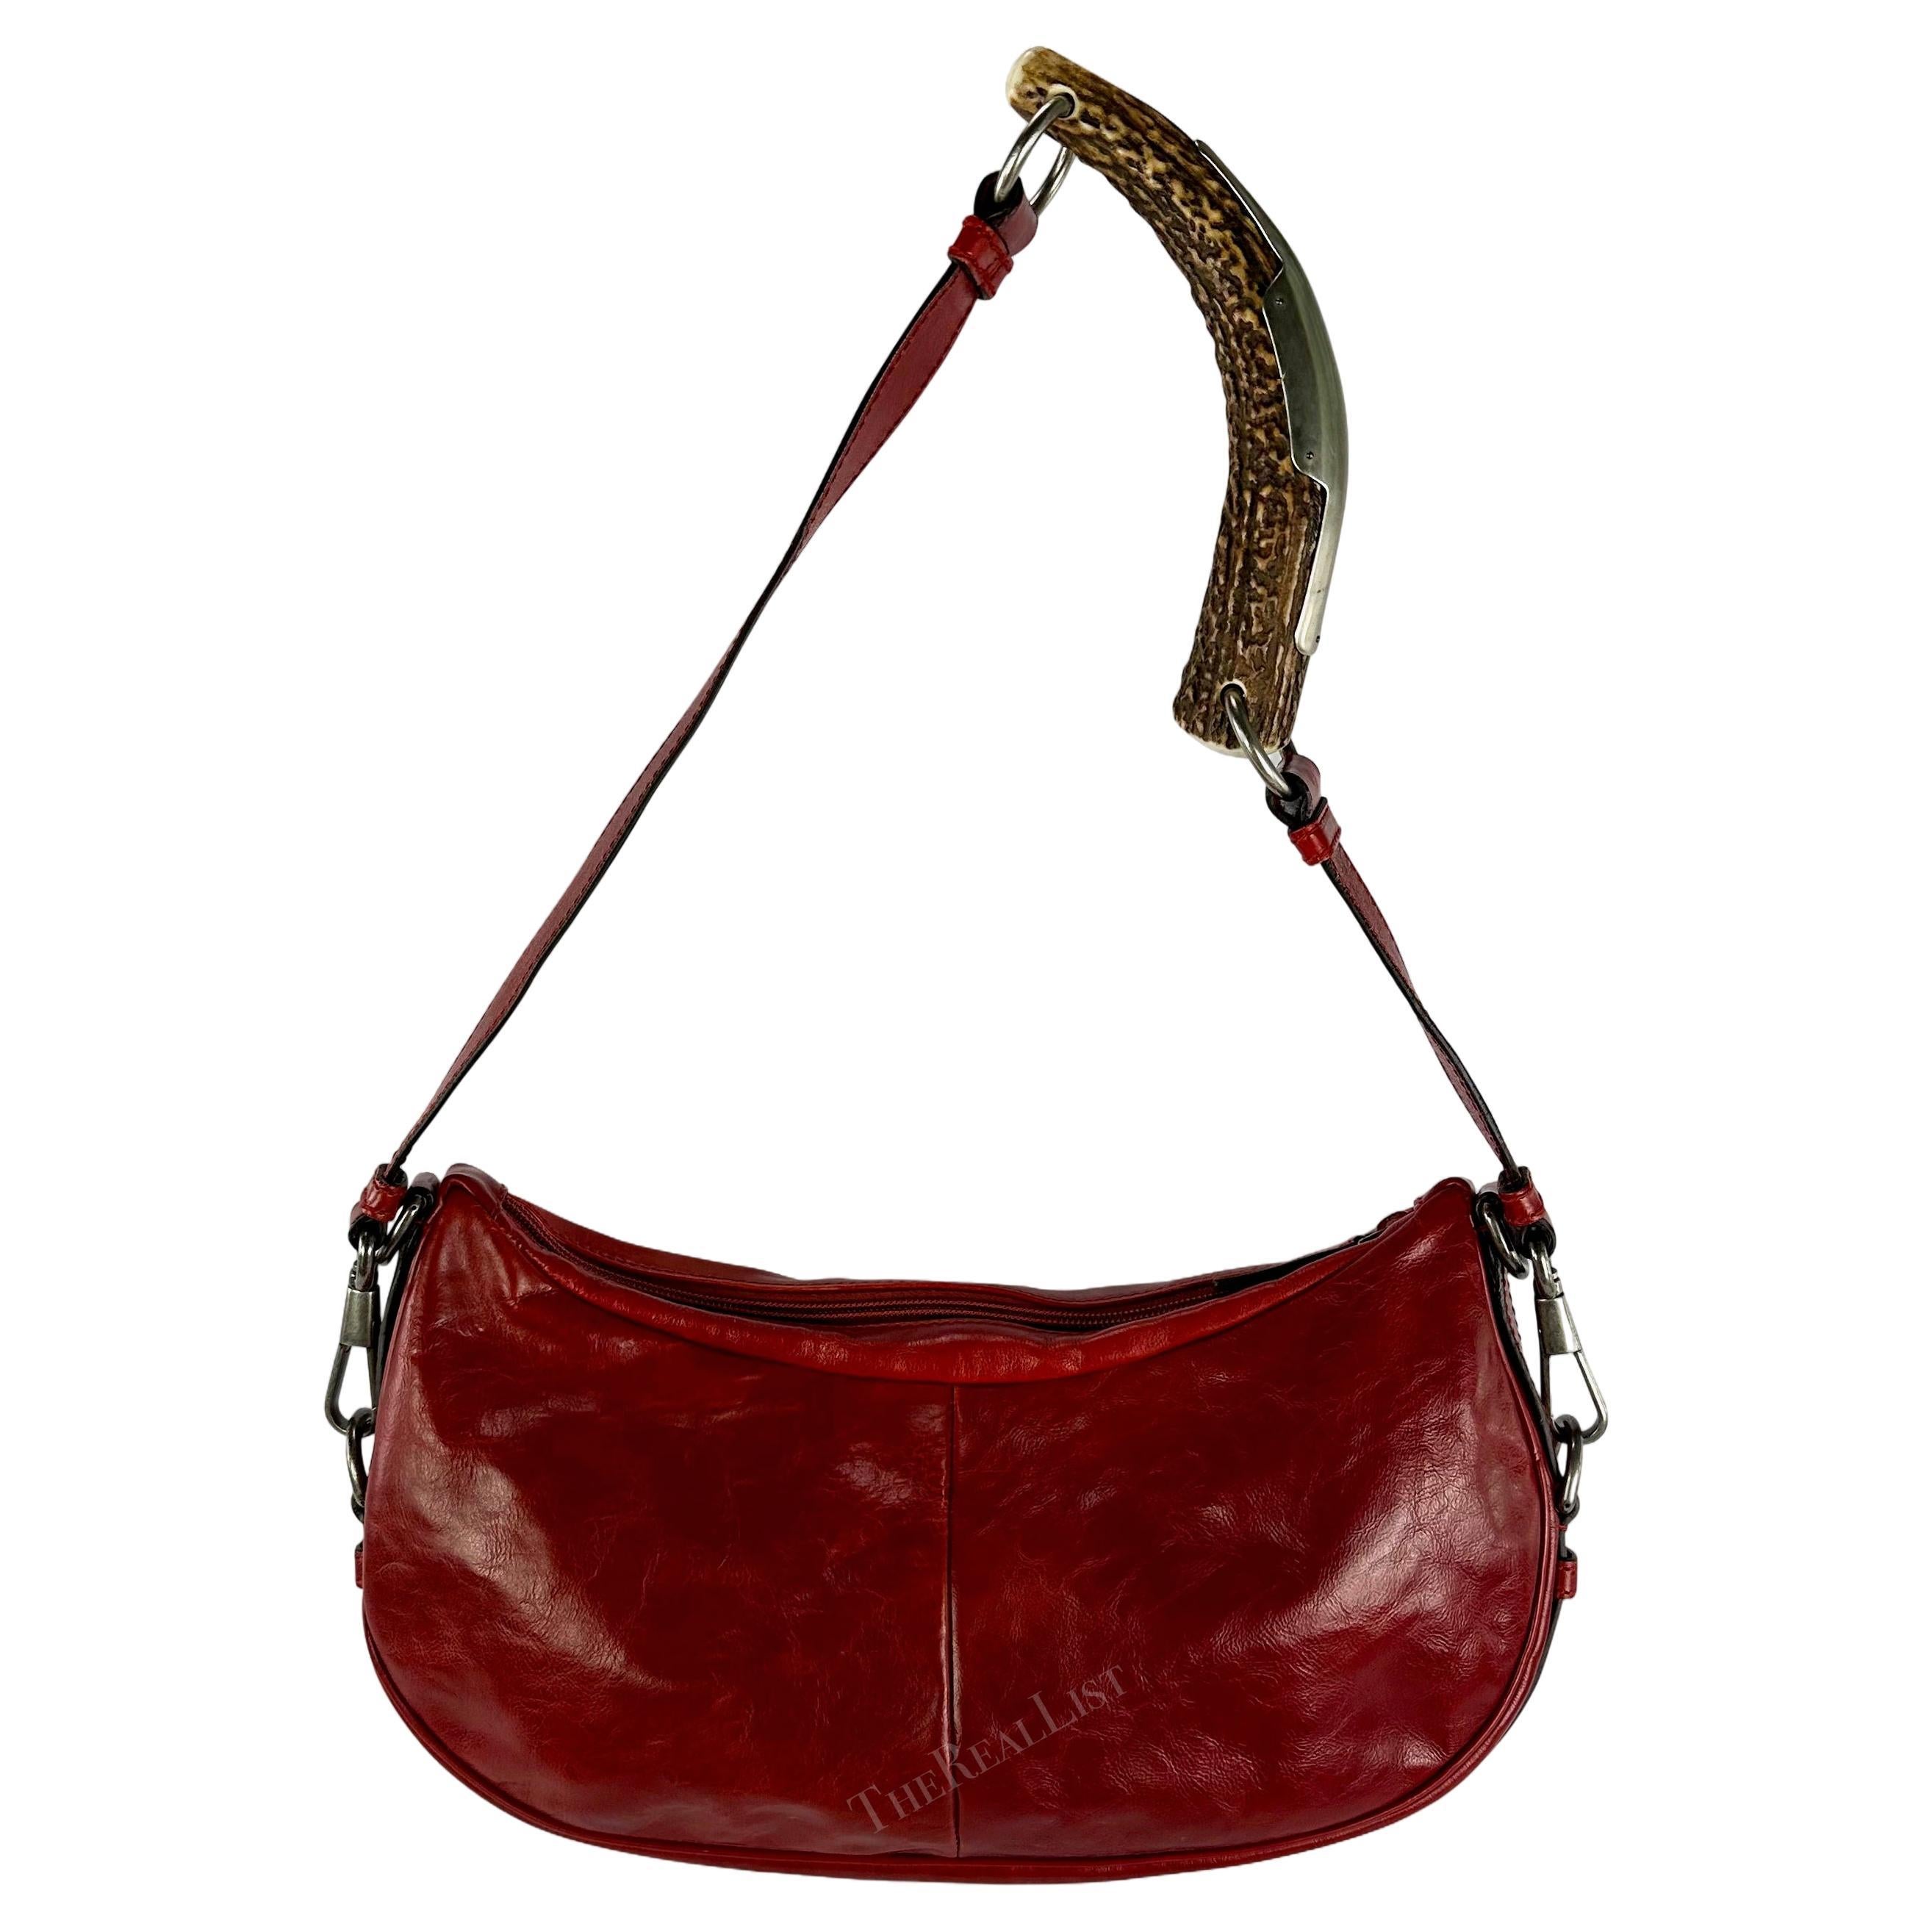 Datant du début des années 2000, ce remarquable sac à bandoulière en cuir rouge Yves Saint Laurent Rive Gauche style Mombassa a été conçu par Tom Ford. Entièrement fabriqué en cuir rouge légèrement usé, il est doté d'une poignée en corne accentuée